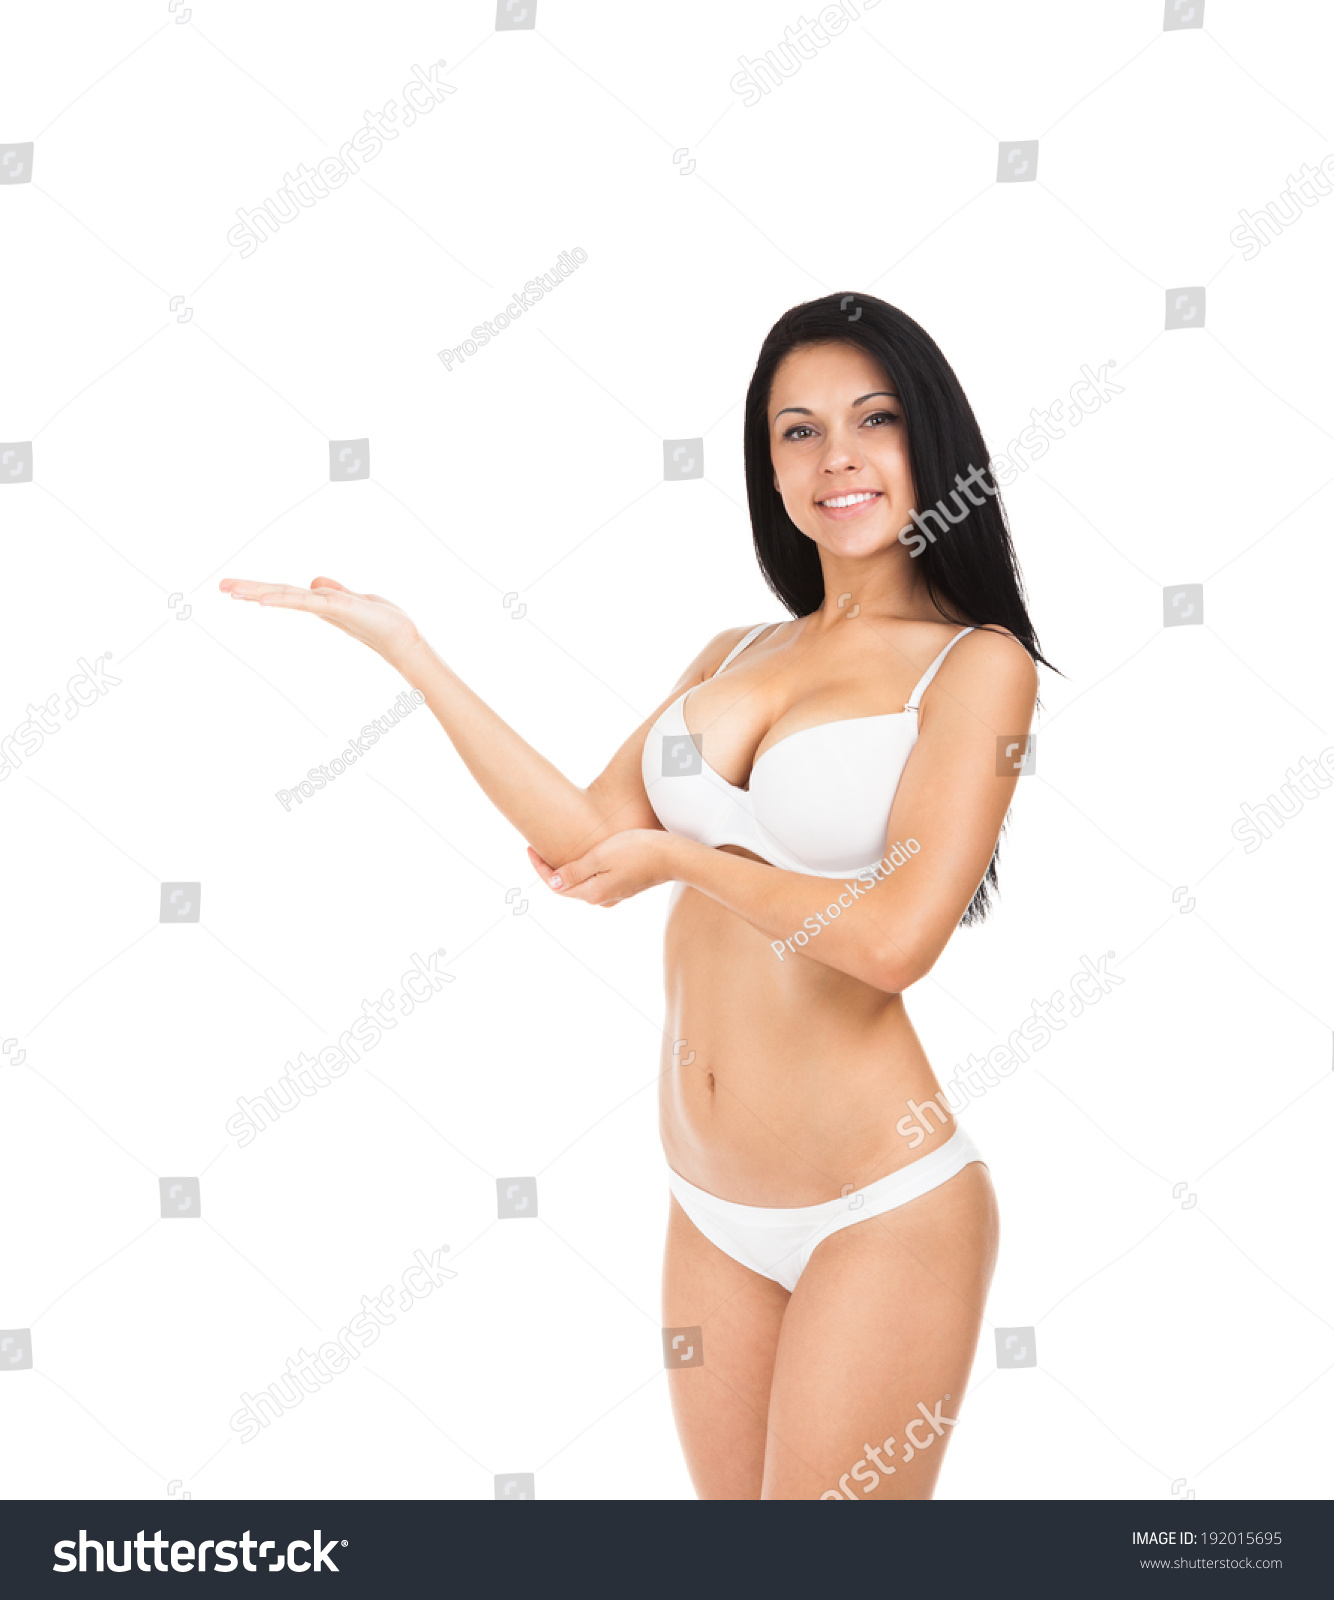 Woman Showing Panties 42